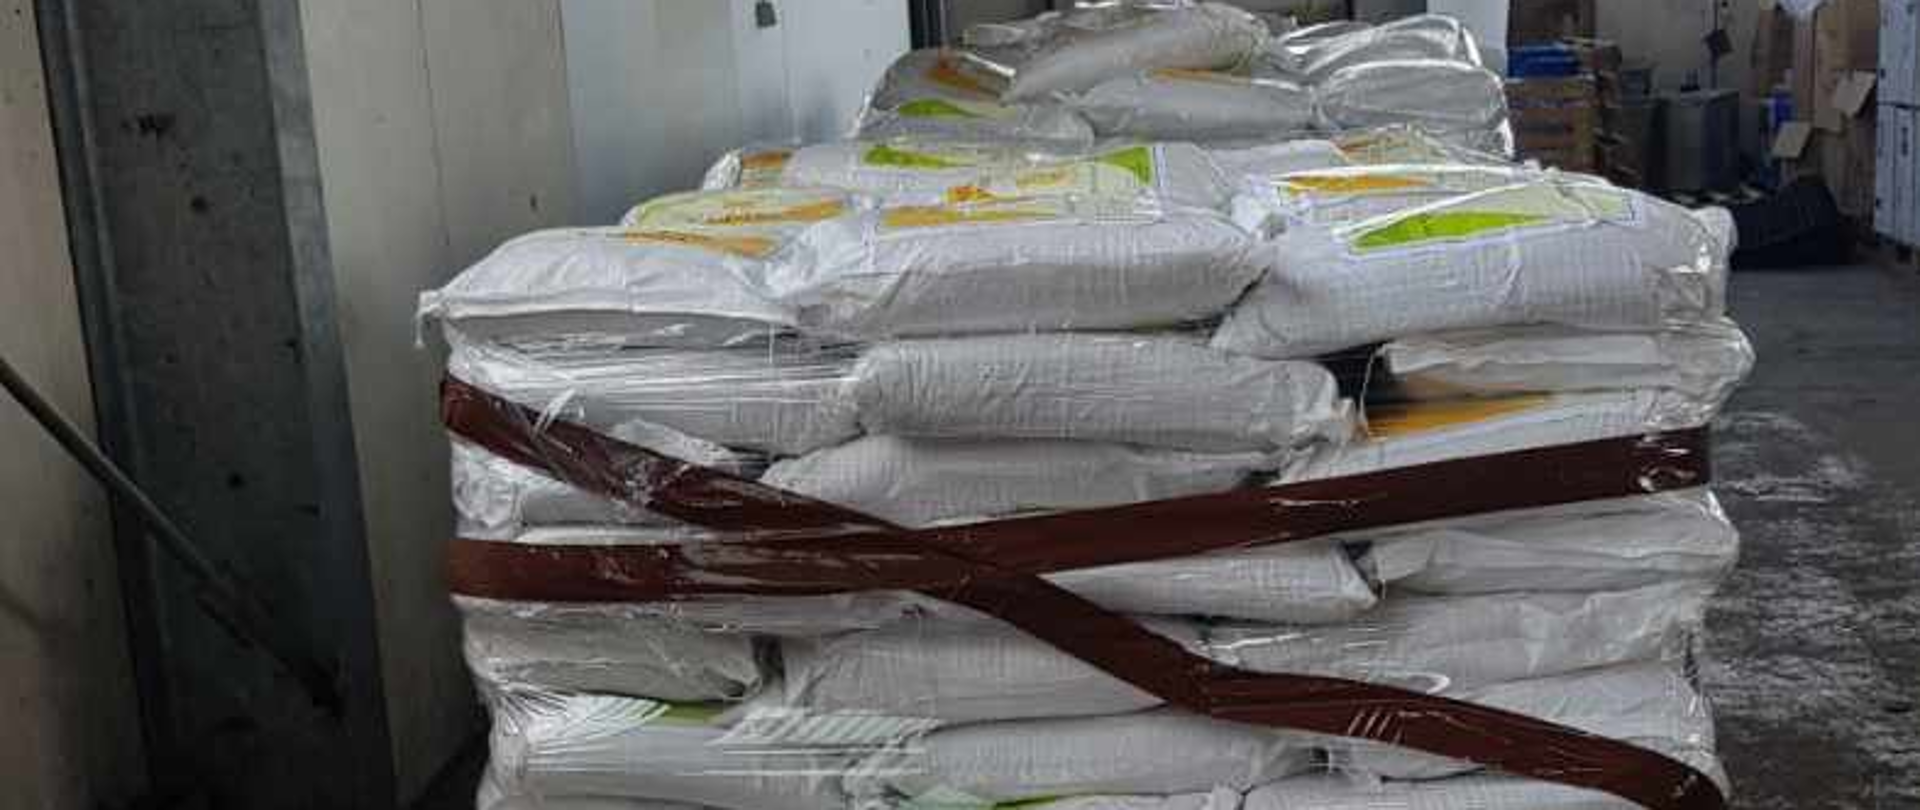 Zachodniopomorski pion PZ PK skierował akt oskarżenia za przemyt kolumbijskiej kokainy w cukrze trzcinowym